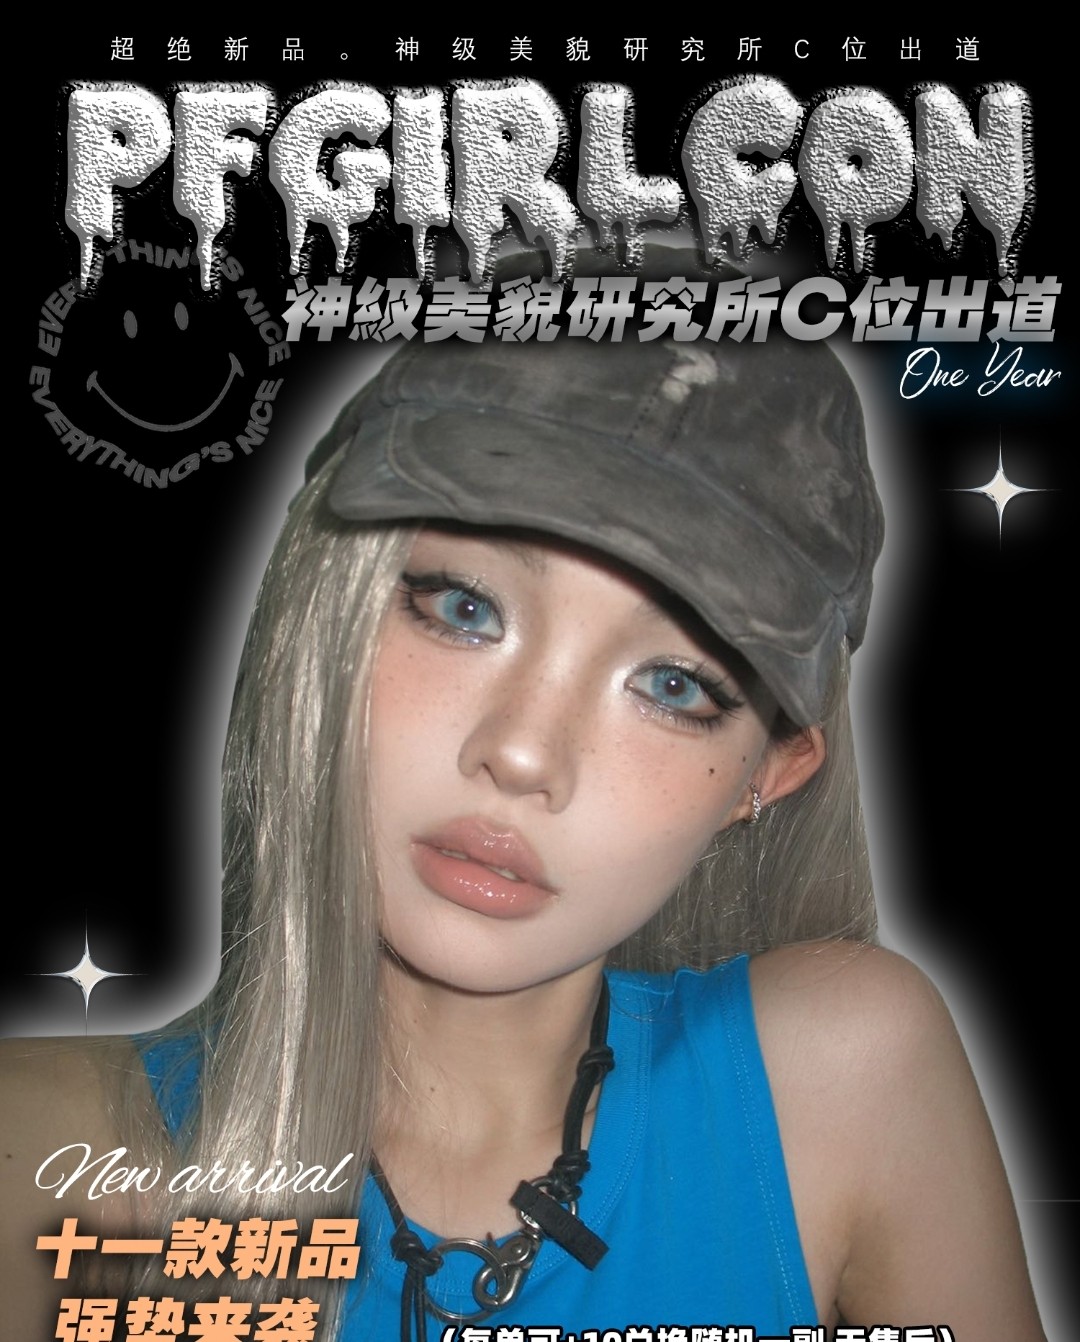 【年抛】pfgirlcon美瞳 新品#海王亚瑟&蛇蝎美人 绿瞳蓝瞳都很难取舍啊…